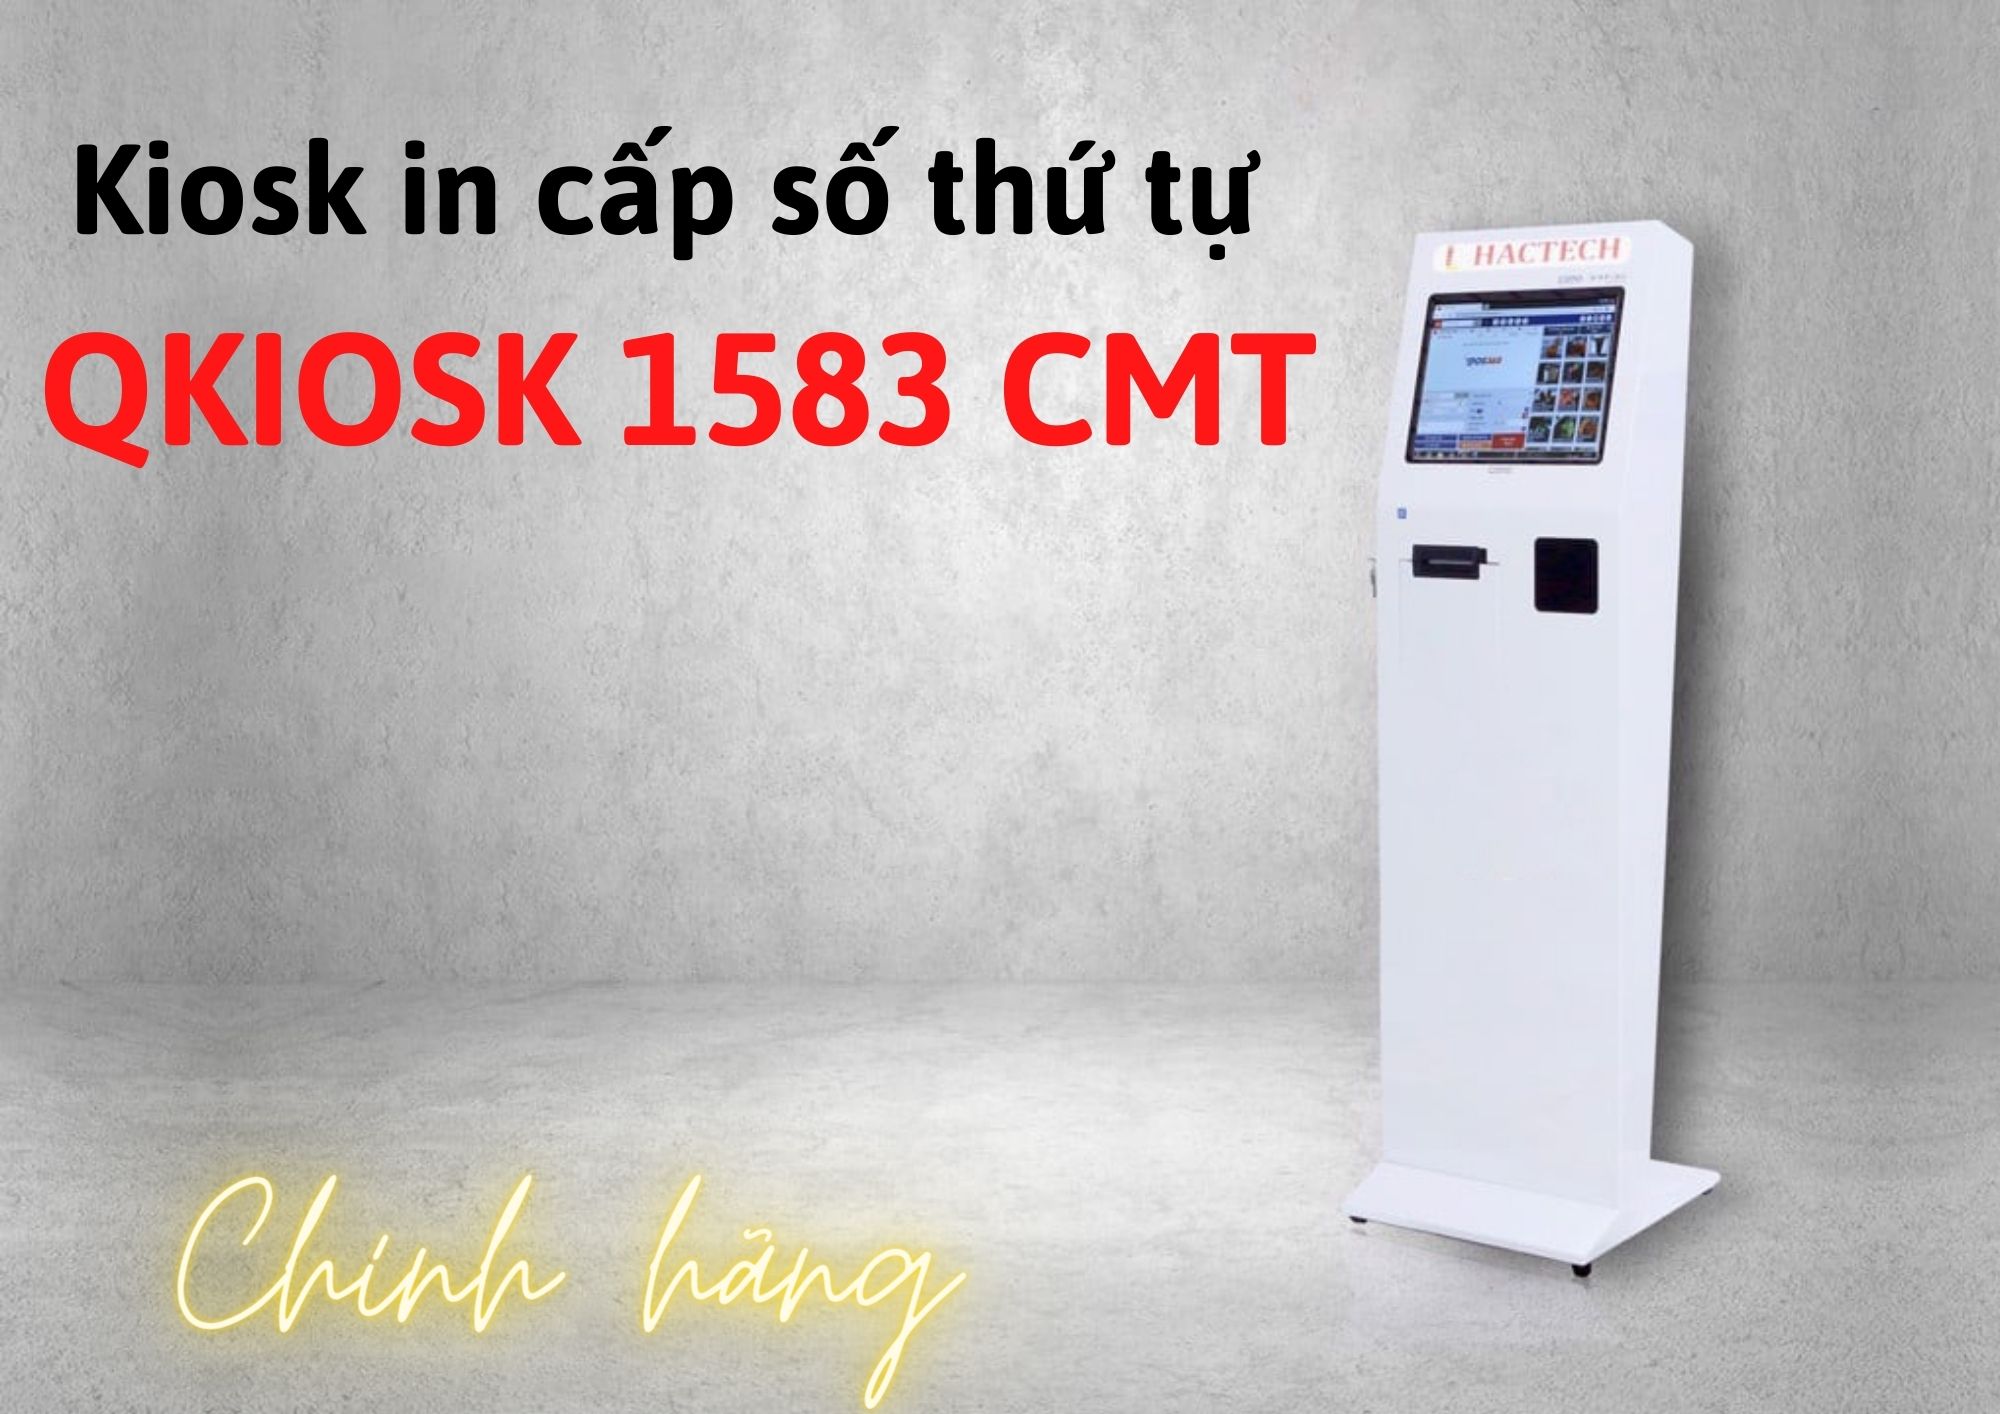 máy lấy số tứ tự QKiosk 1583 CMT